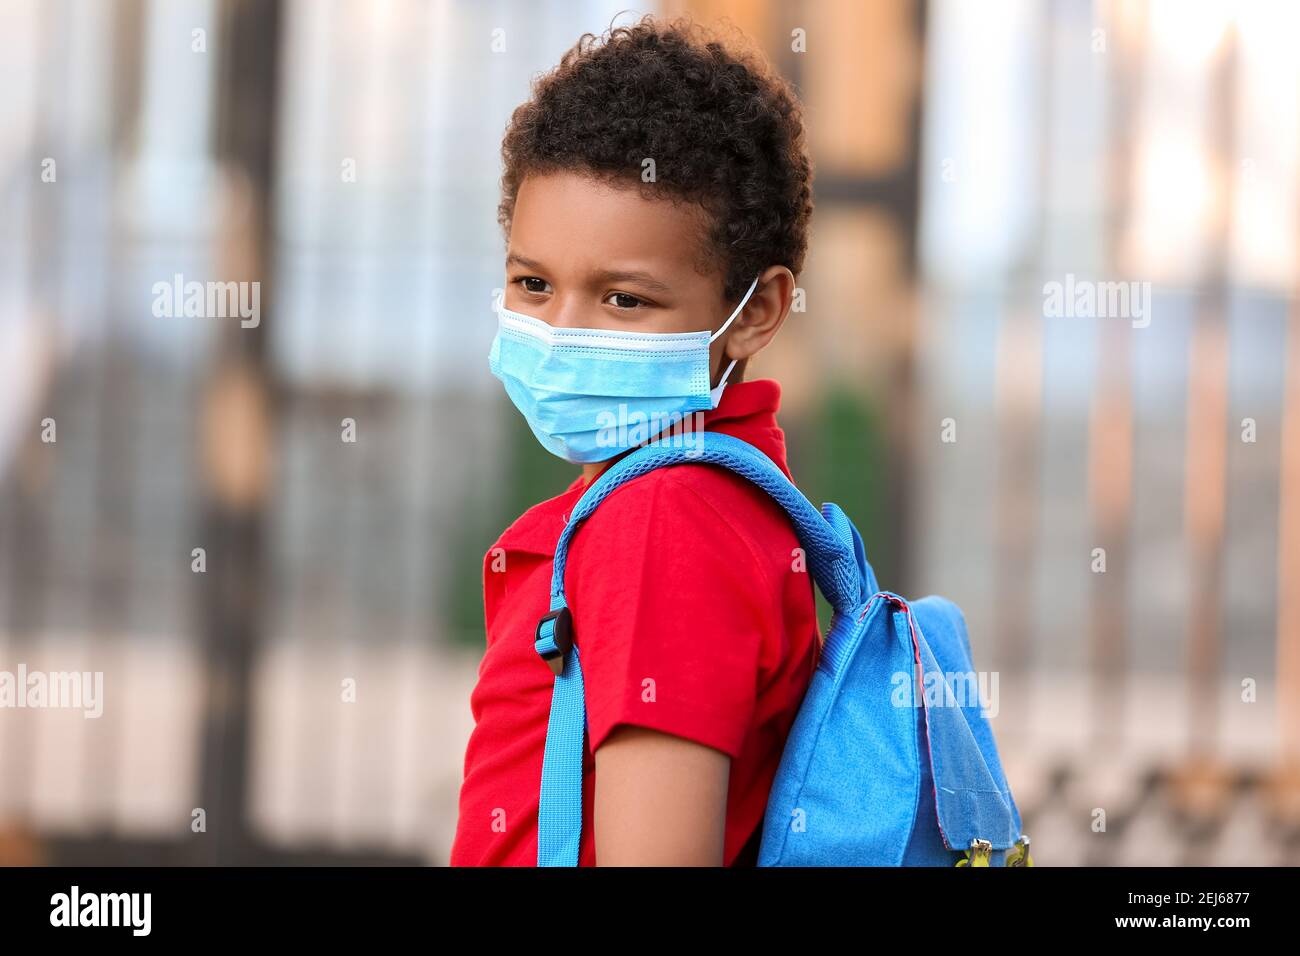 Petit garçon afro-américain dans un masque médical près de l'école. Épidémie de coronavirus Banque D'Images